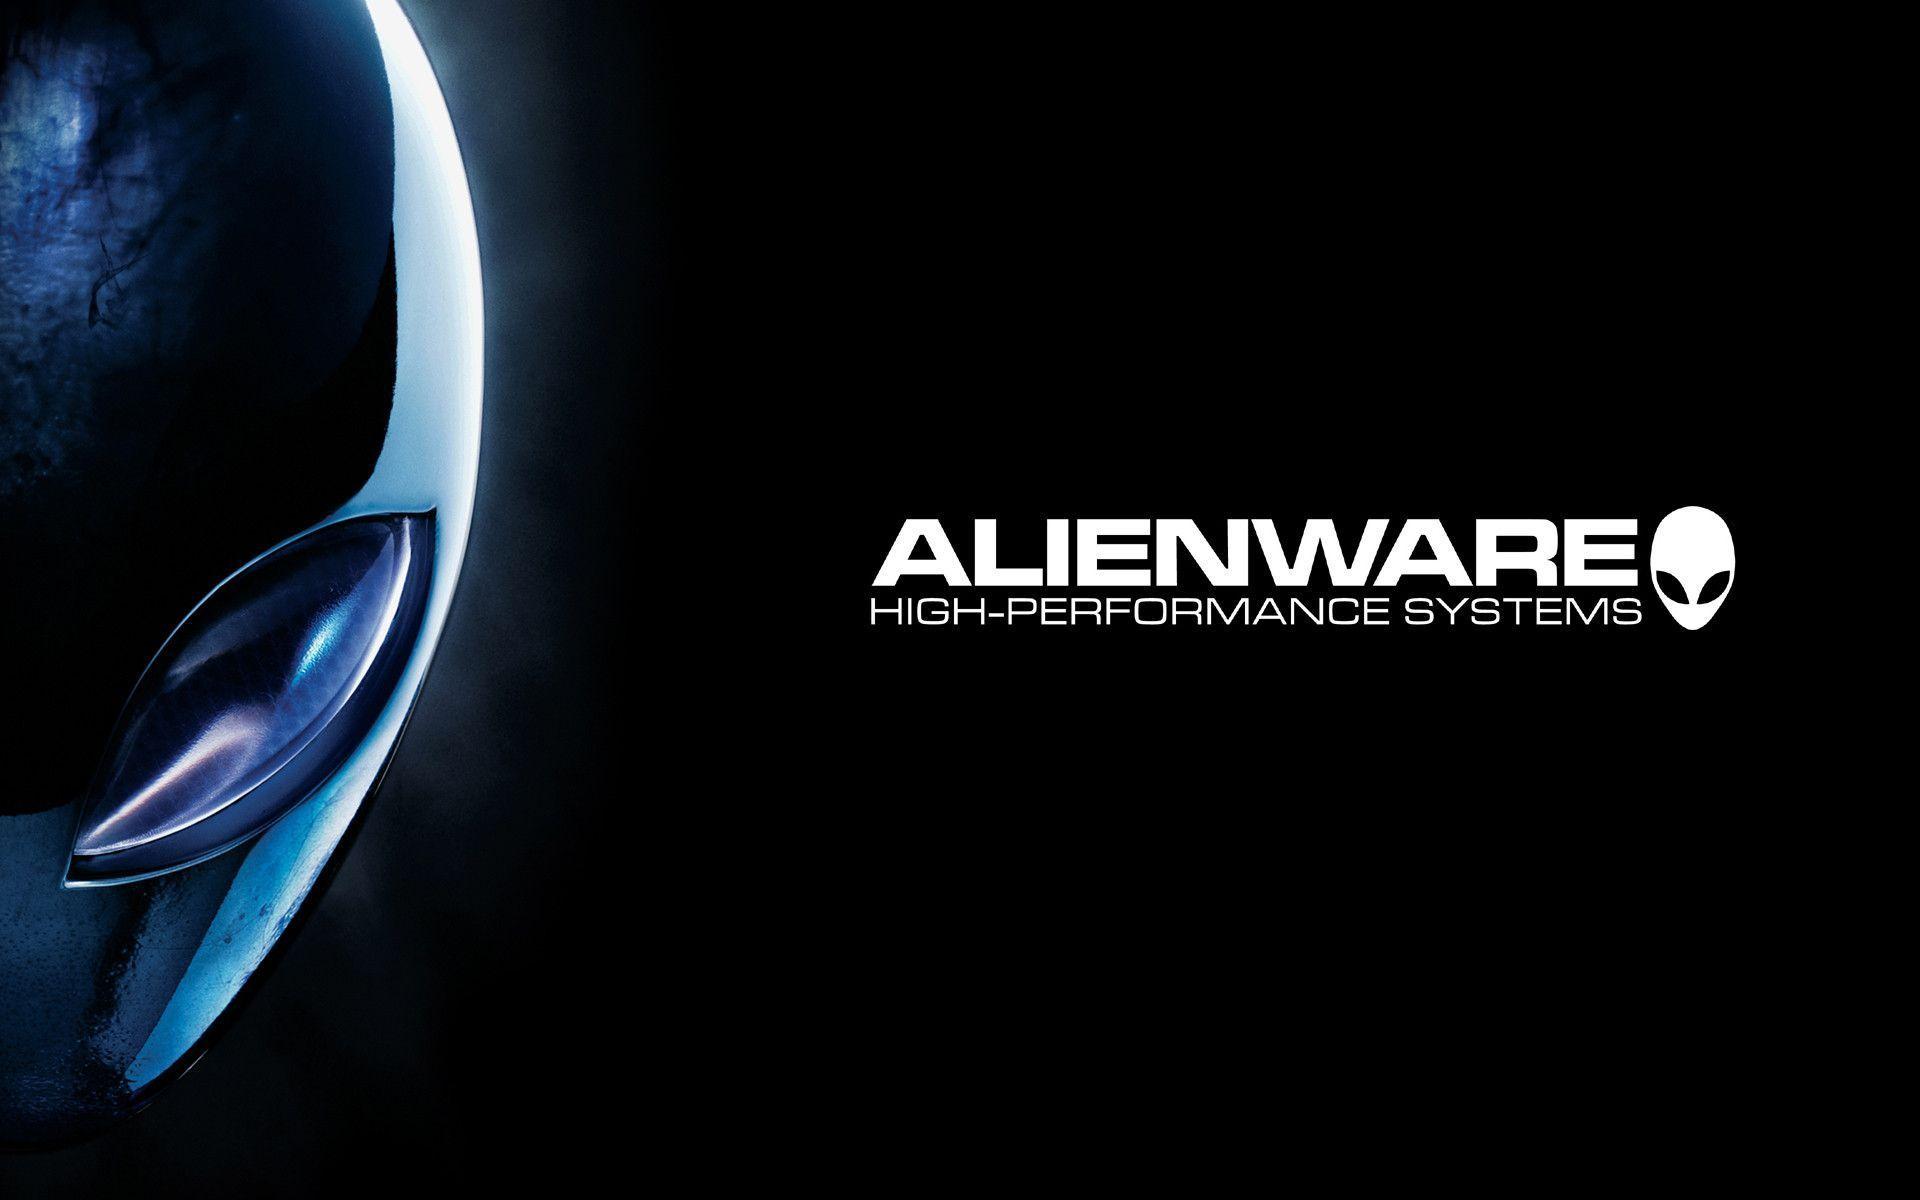 HD Alienware Wallpaper 1920x1080 & Alienware Background